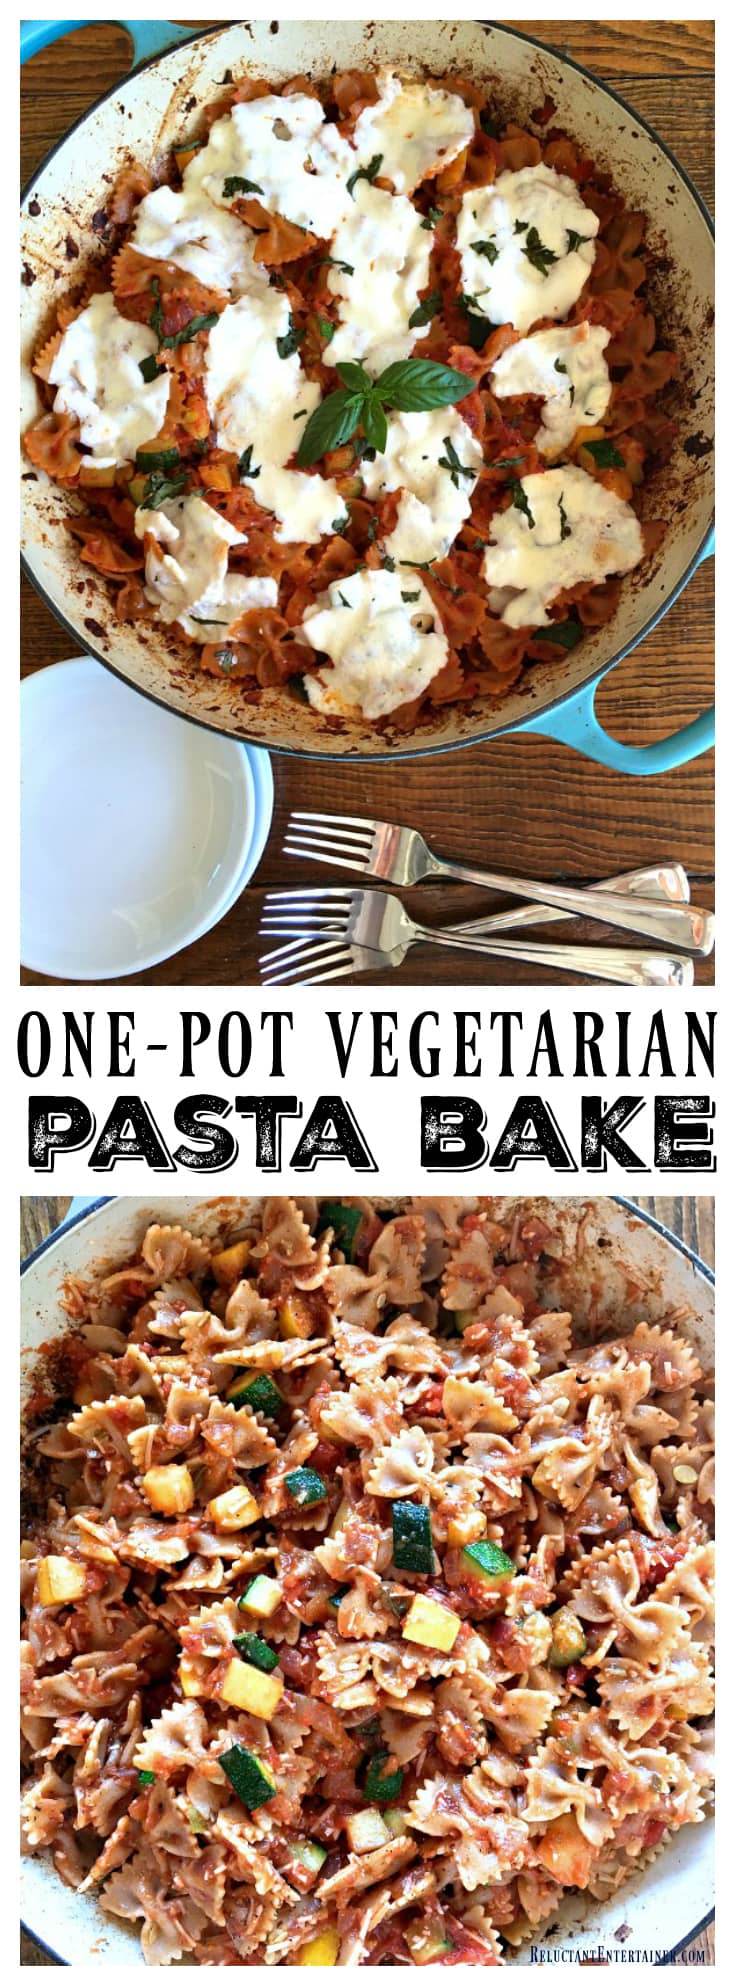 One-Pot Vegetarian Pasta Bake